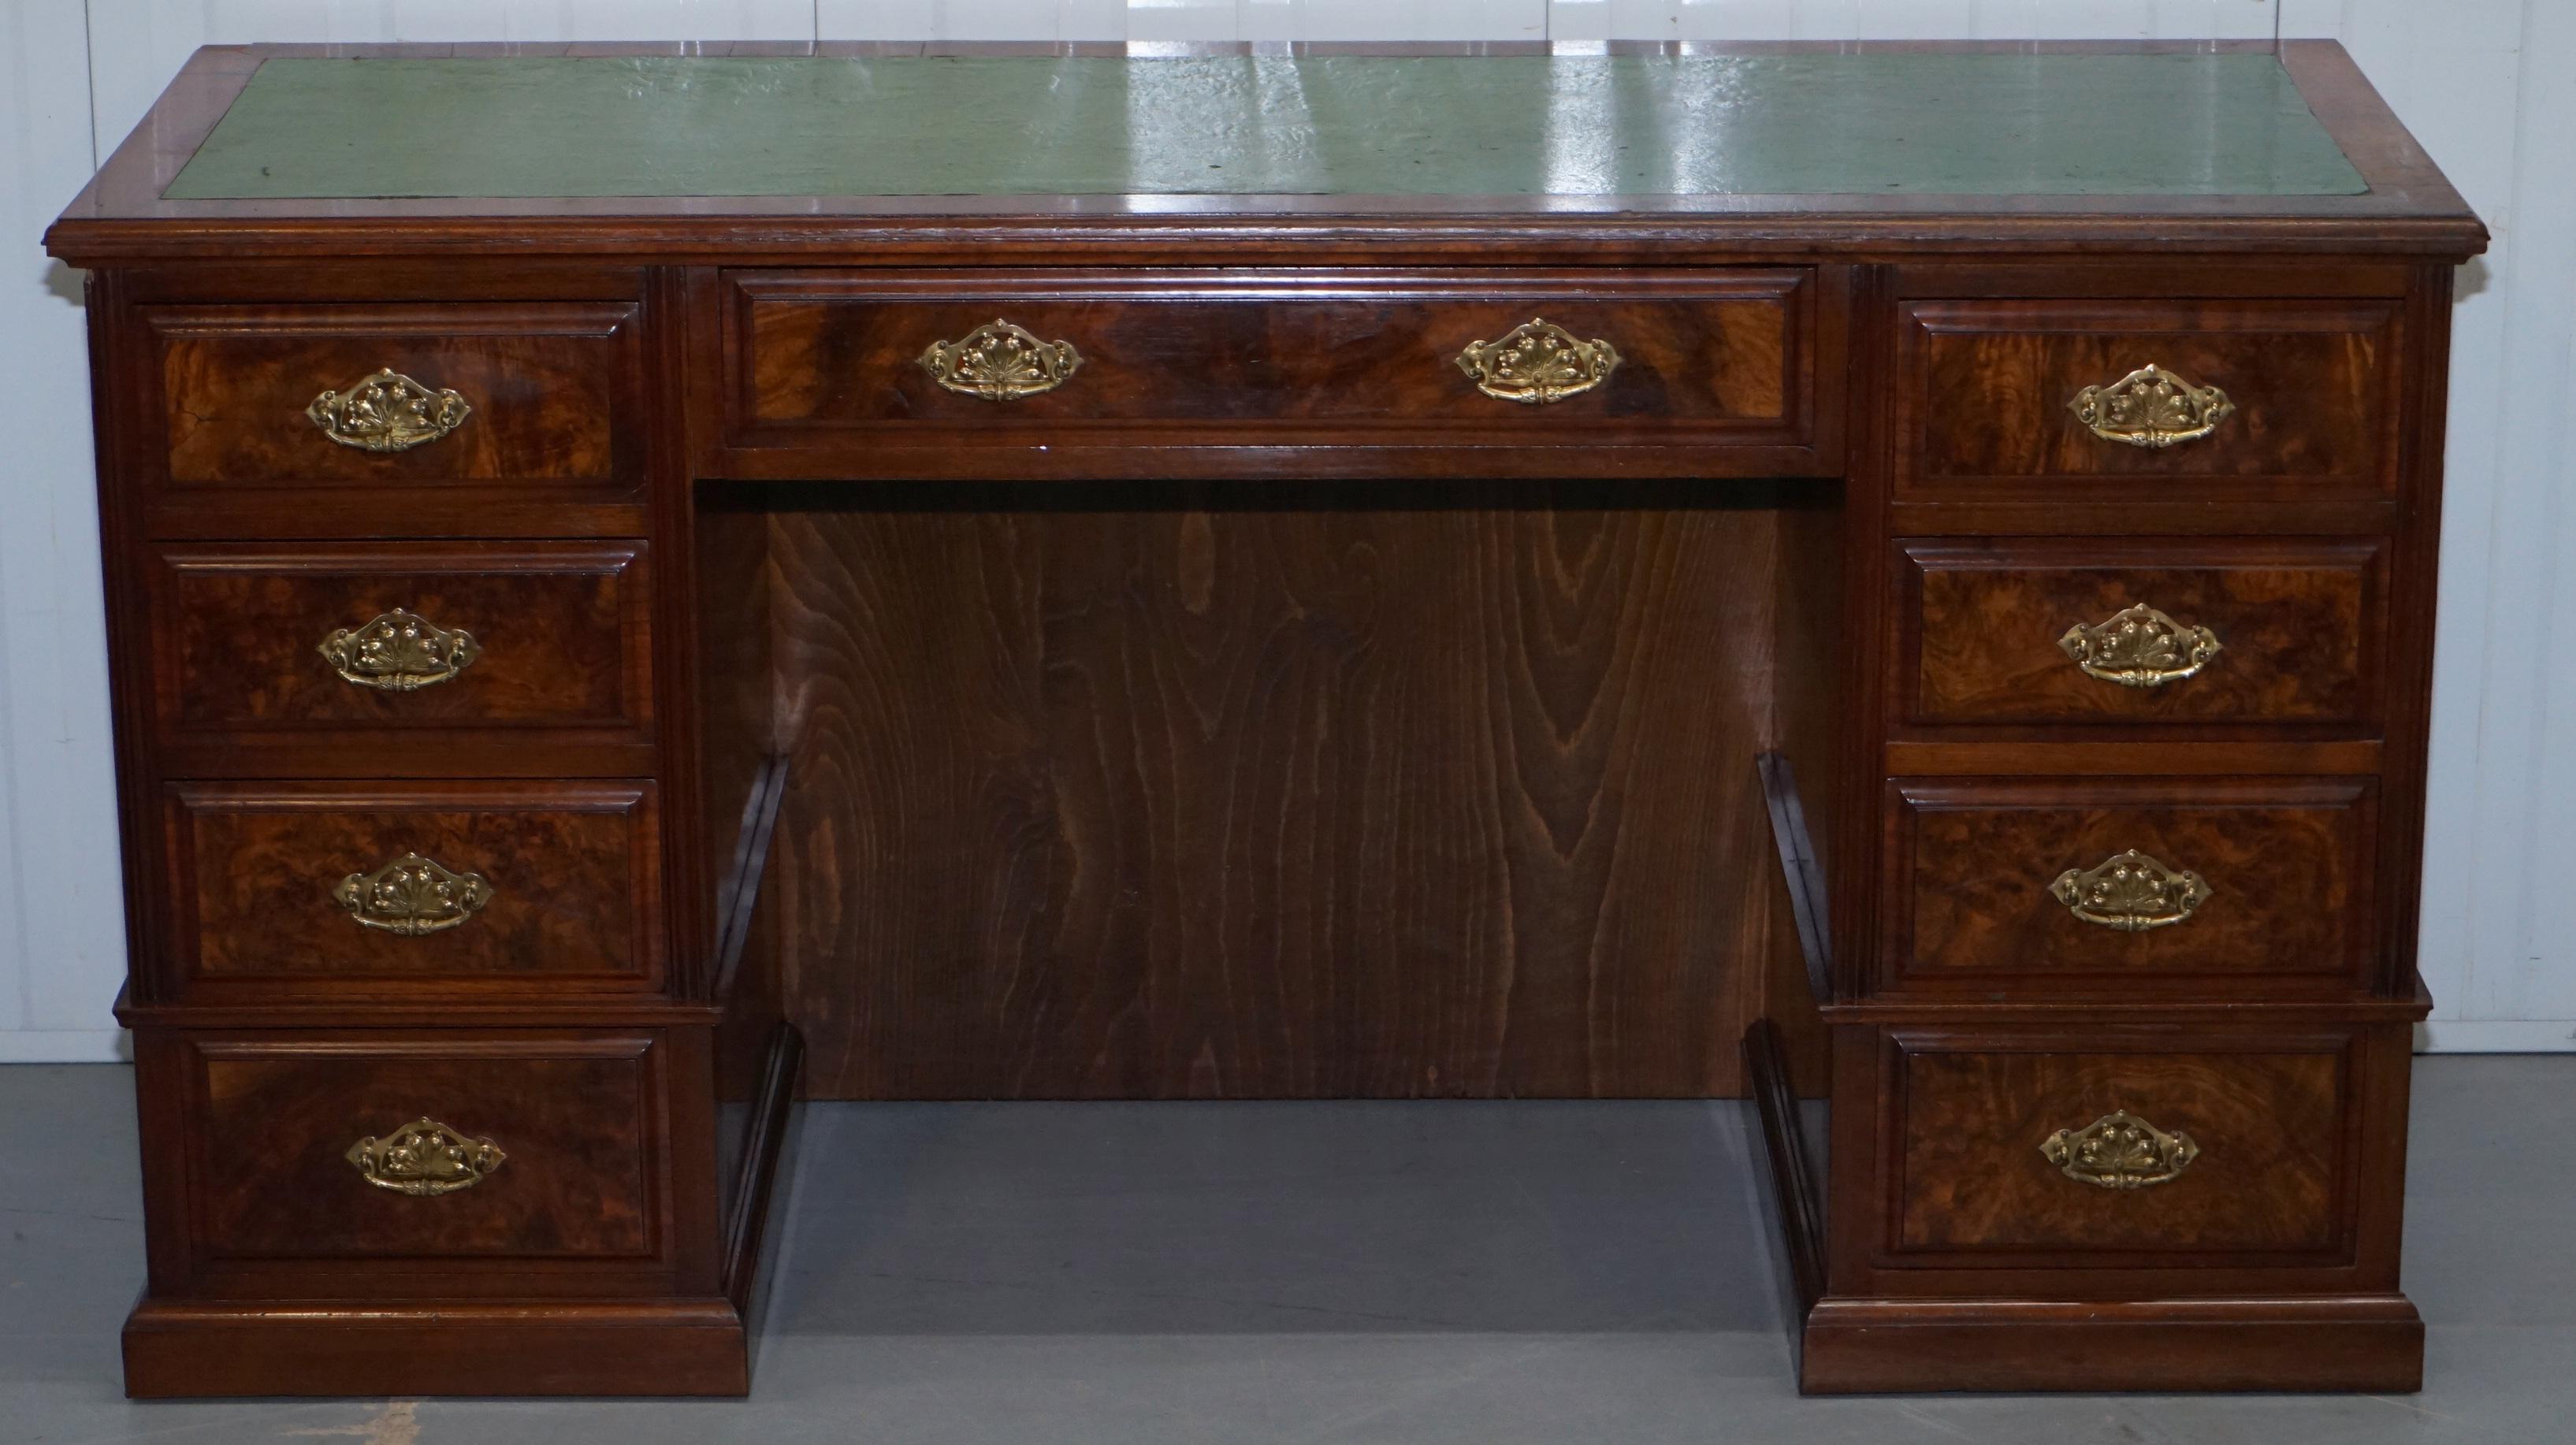 Siamo lieti di offrire in vendita questa splendida scrivania a due piedistalli in noce massiccio del 1870 circa, con foro per le ginocchia di grandi dimensioni.

Questa scrivania è sublime, la patina di noce sui cassetti è ricca e calda, la radica